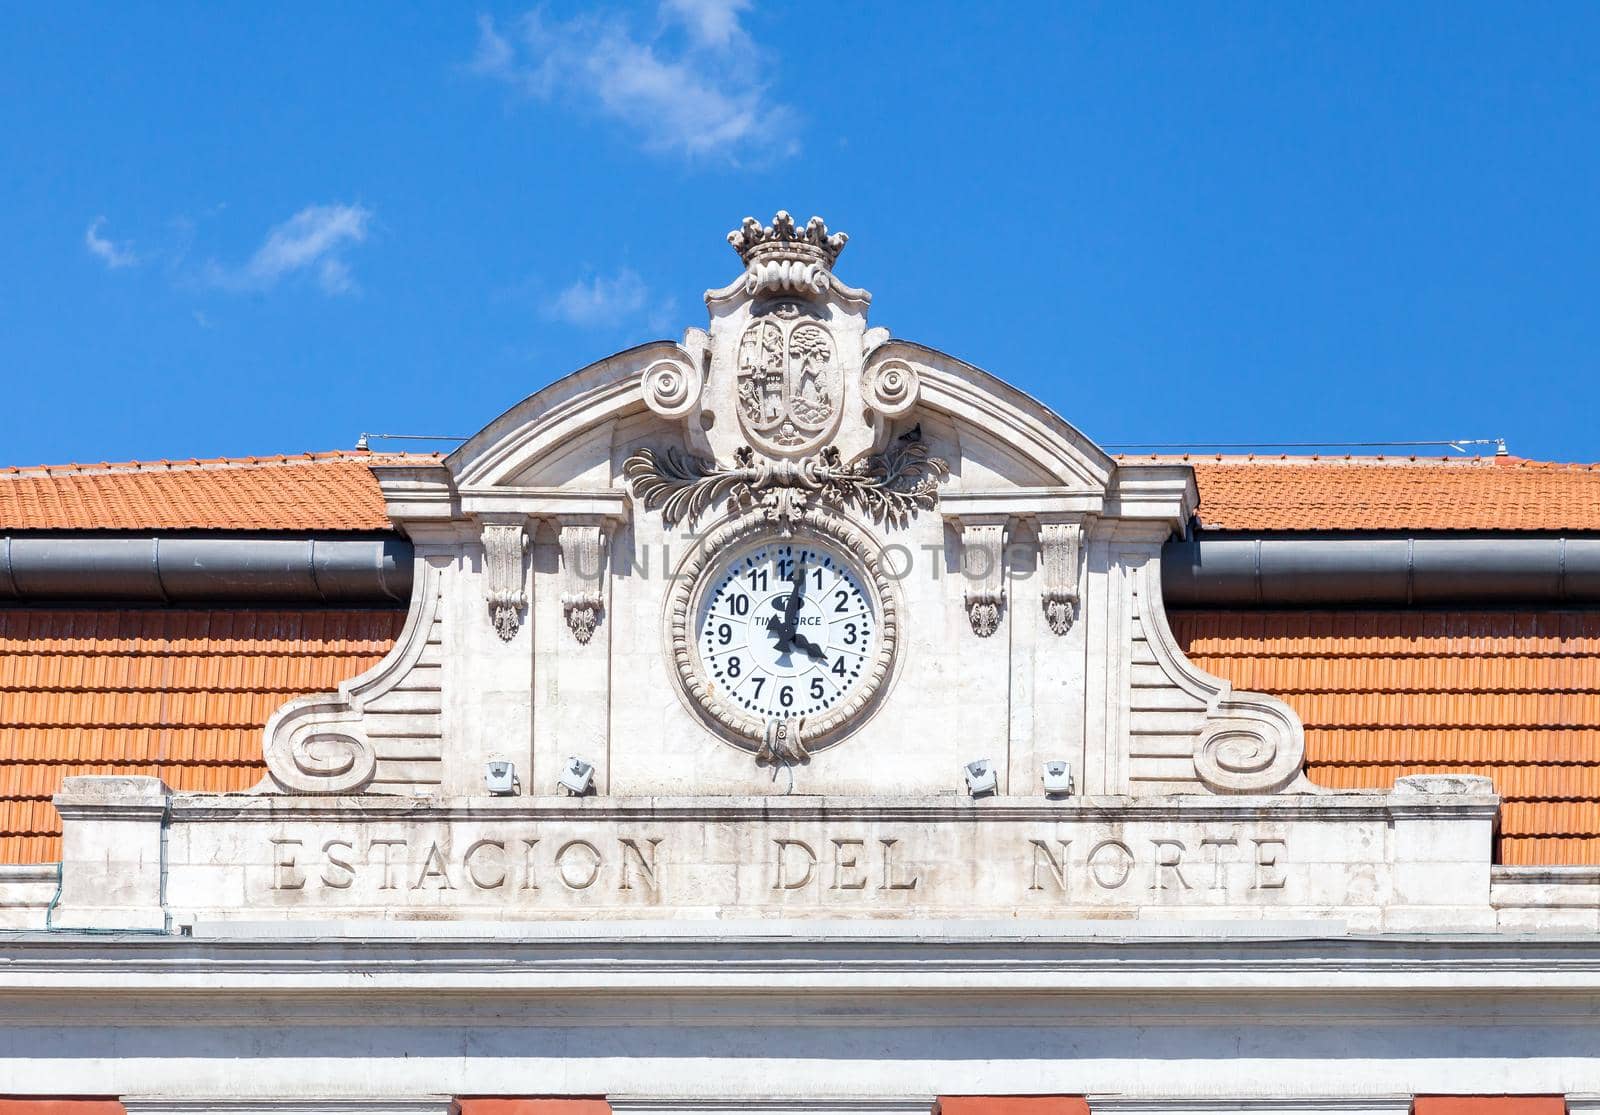 Estacion del Norte, Madrid, detail of the facade by Goodday